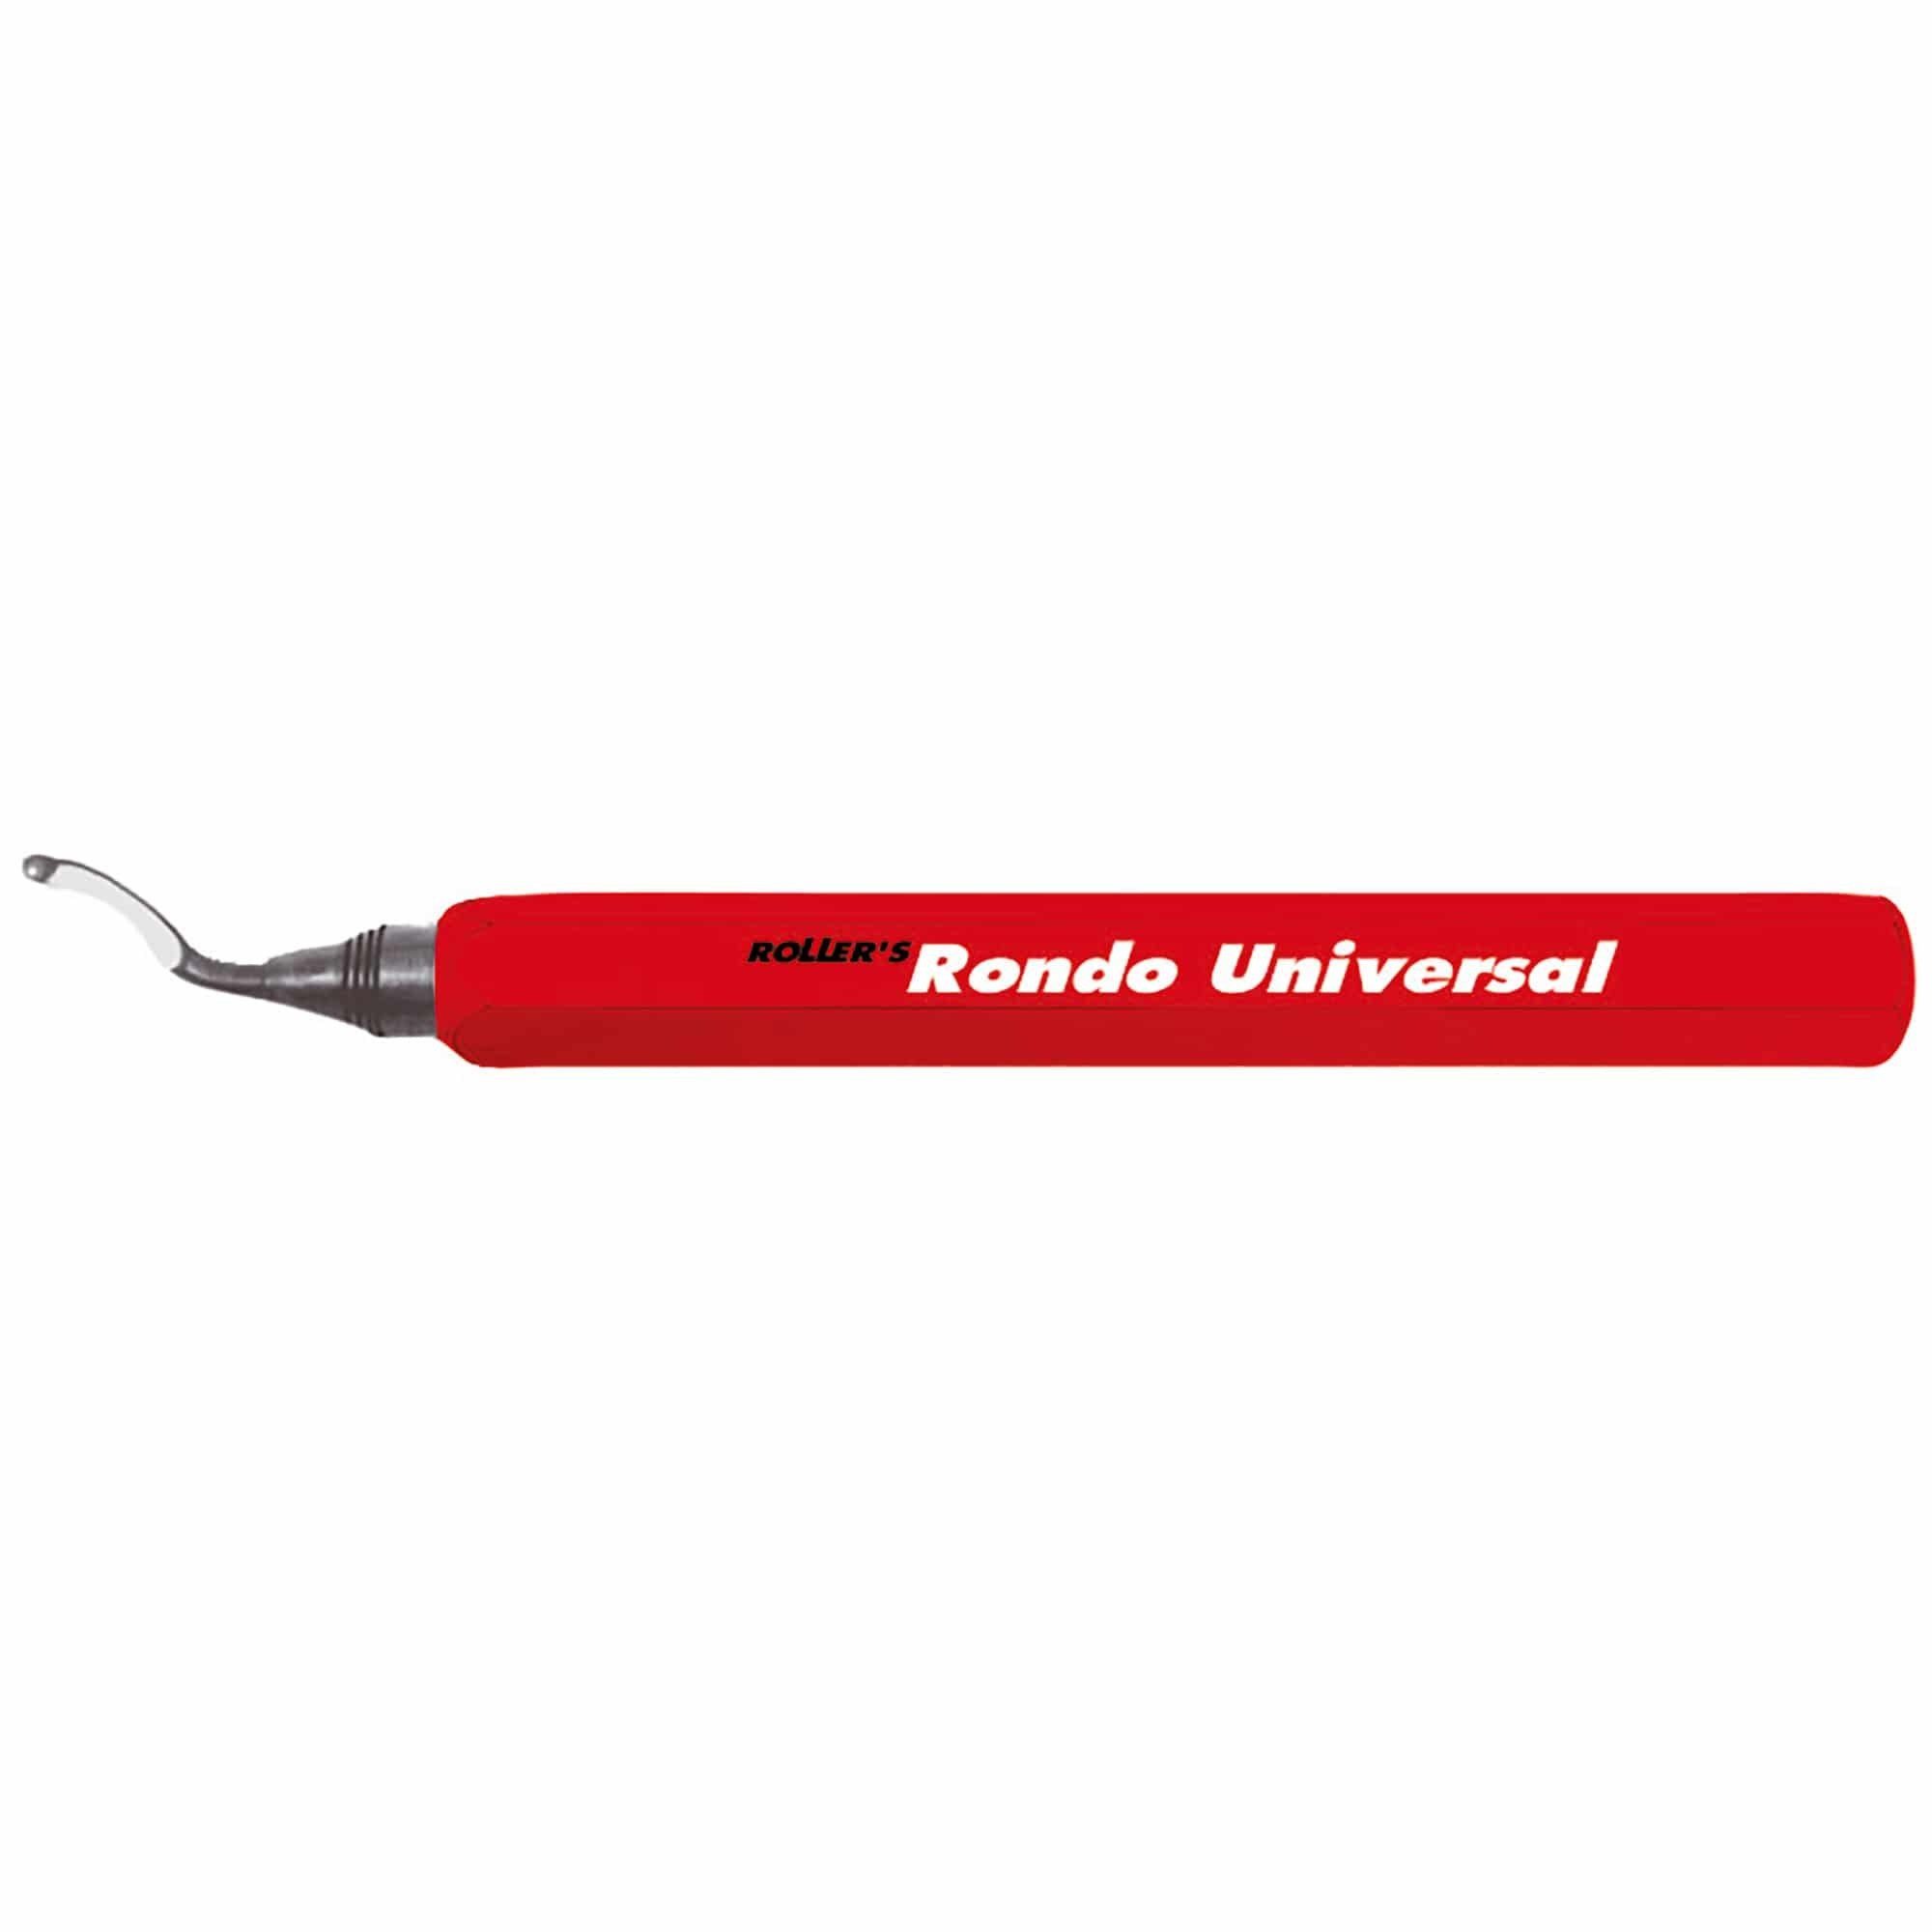 Roller Werkzeuge und Maschinen Feile, Universal-Entgrater - ROLLER'S Rondo Universal